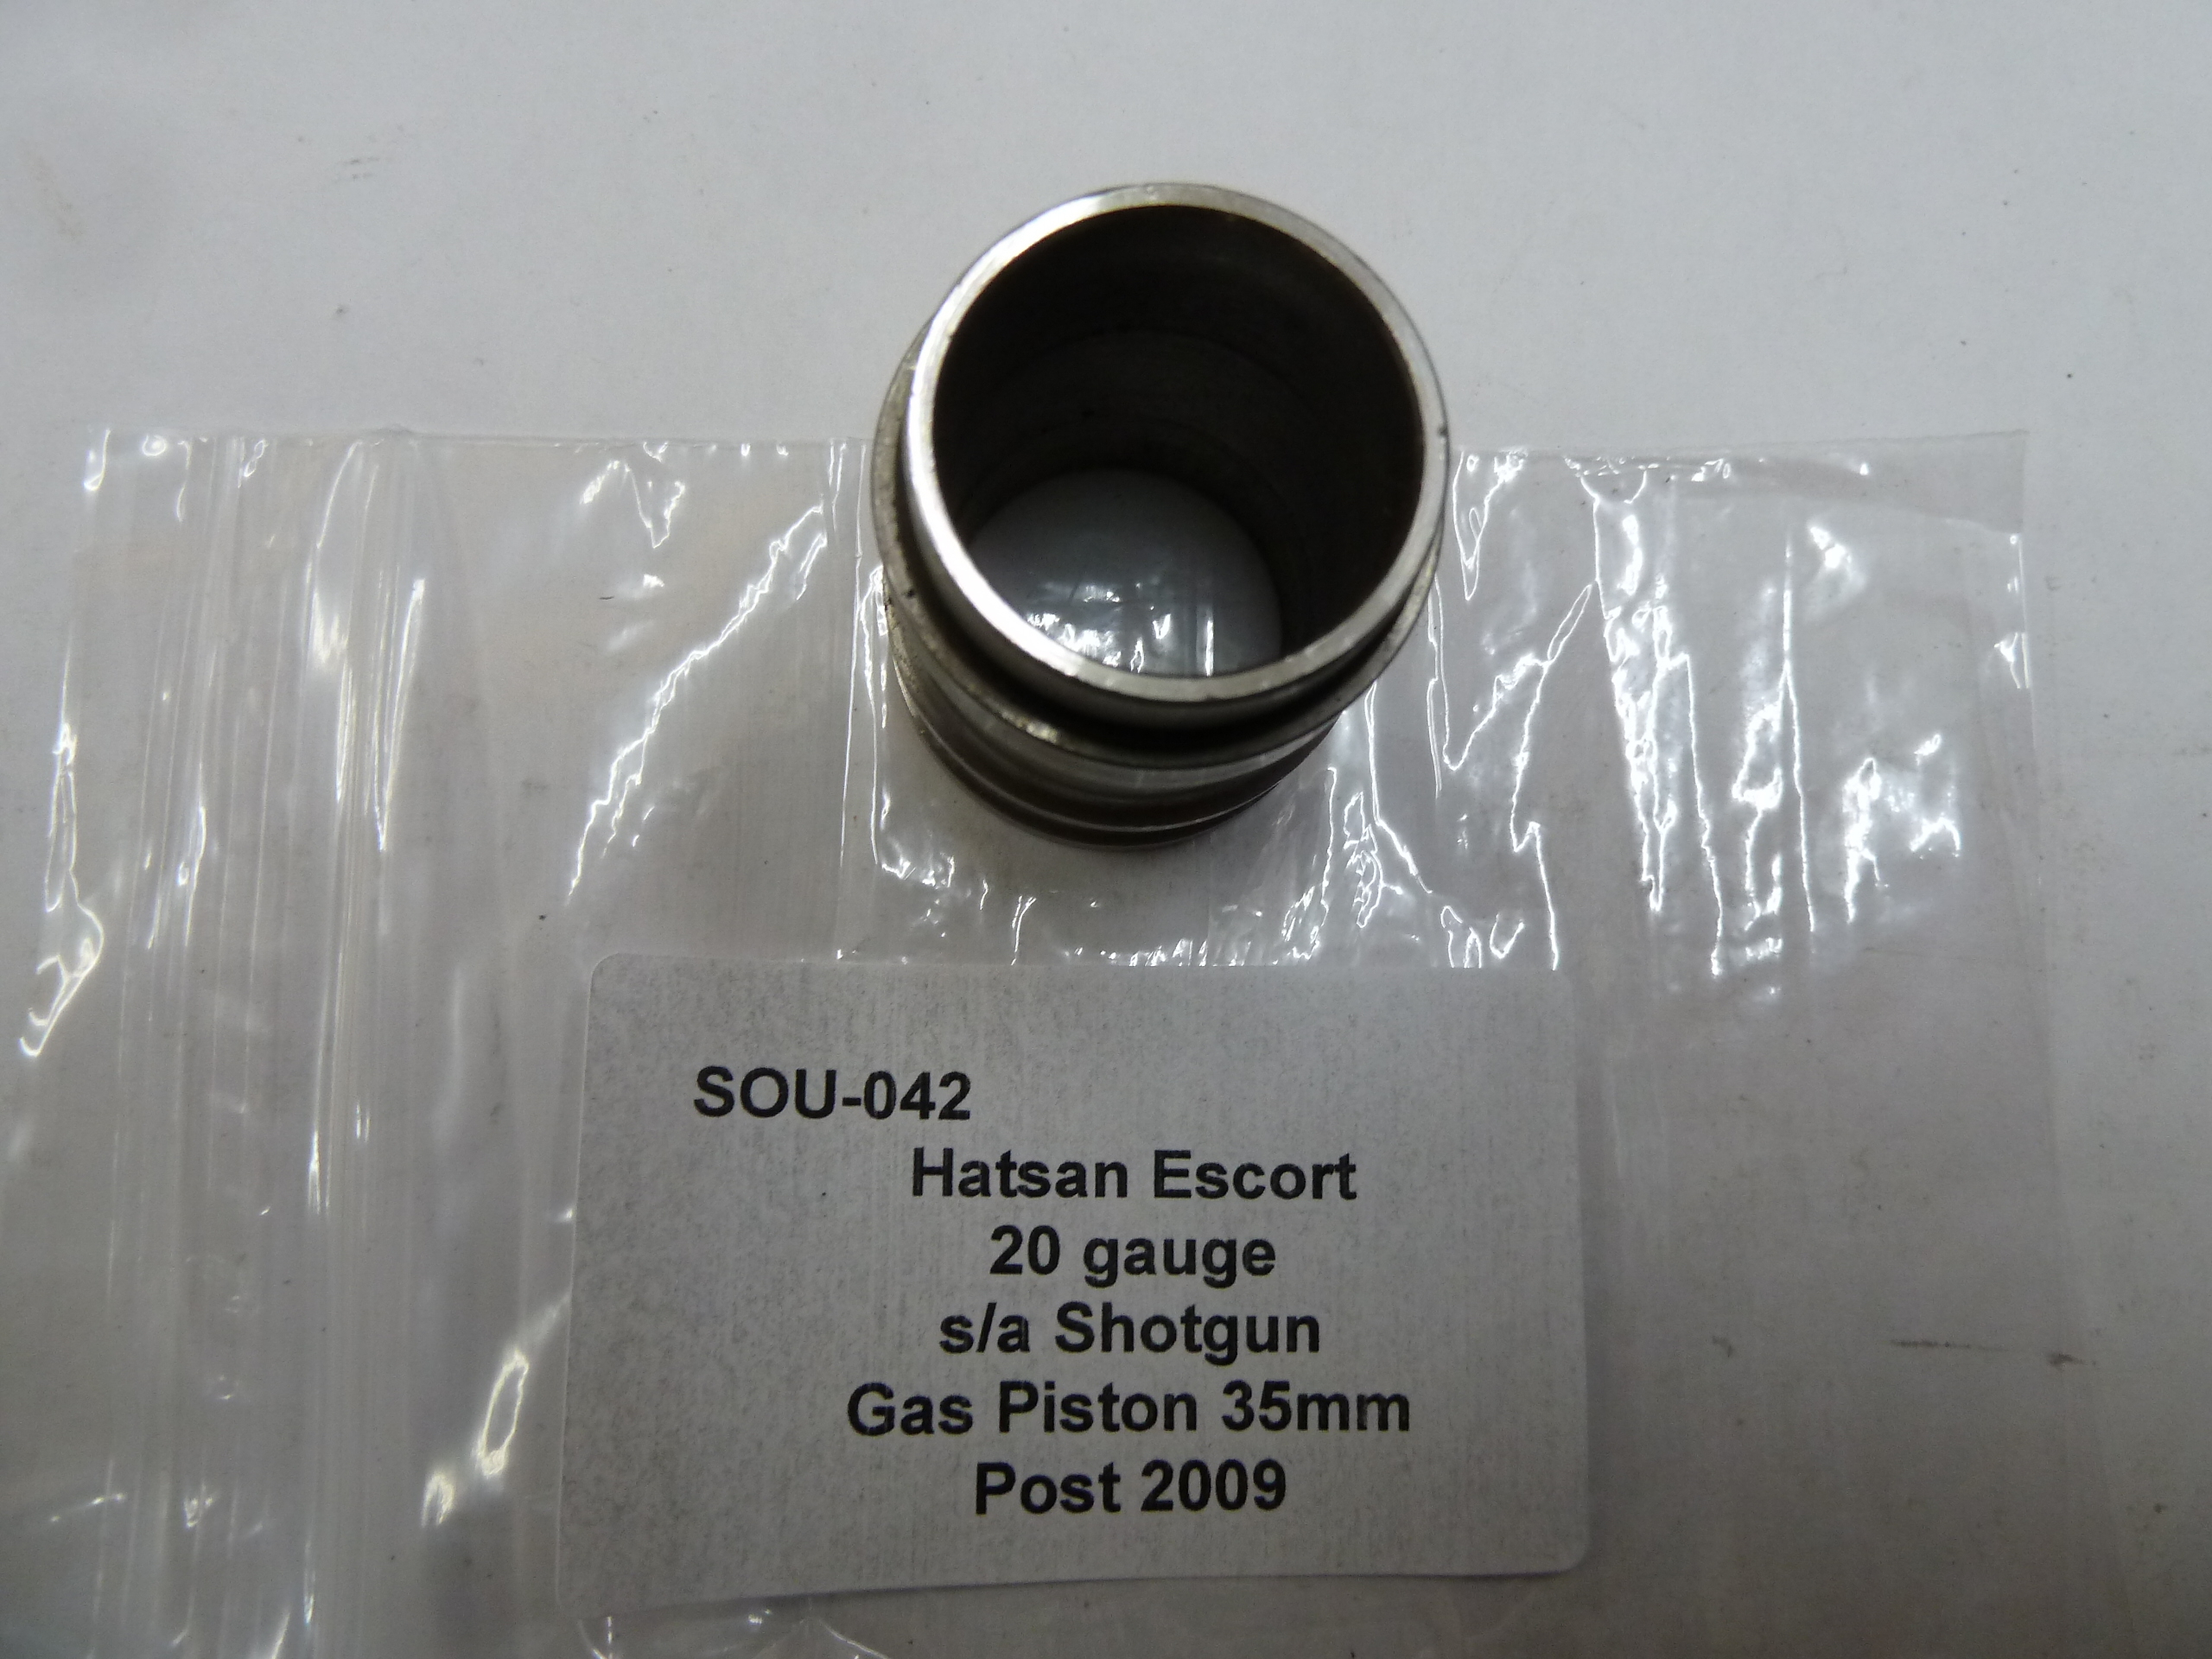 SOU-042 Hatsan 20 gauge gas psiton 35mm post 2009 (2)